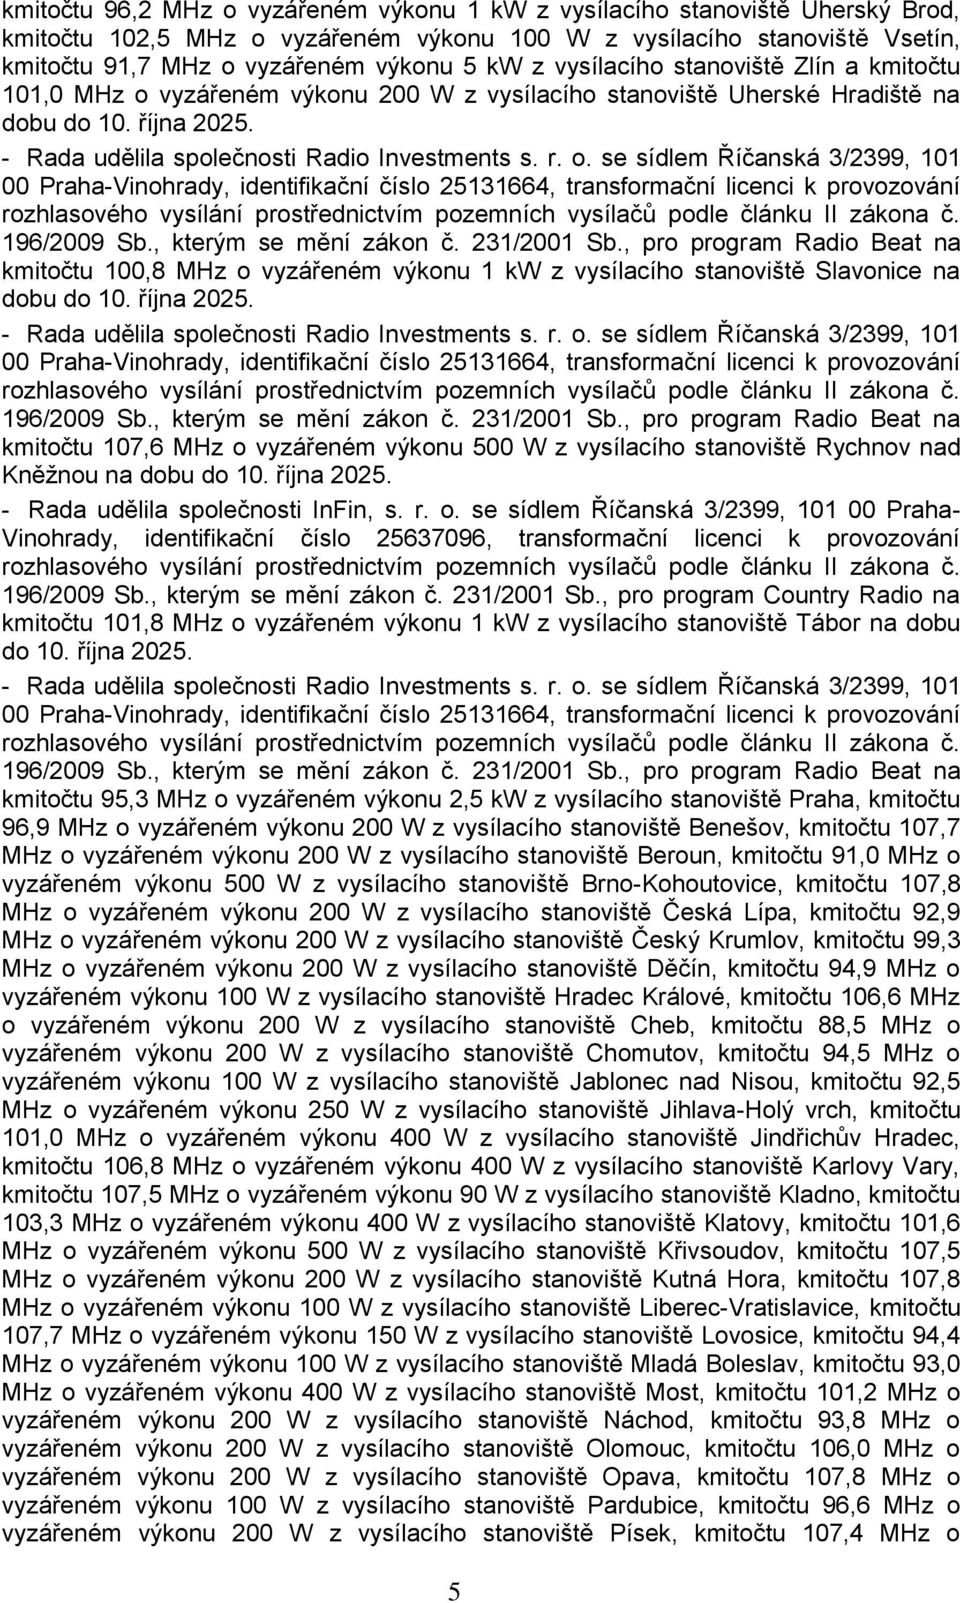 , kterým se mění zákon č. 231/2001 Sb., pro program Radio Beat na kmitočtu 100,8 MHz o vyzářeném výkonu 1 kw z vysílacího stanoviště Slavonice na dobu do 10. října 2025.